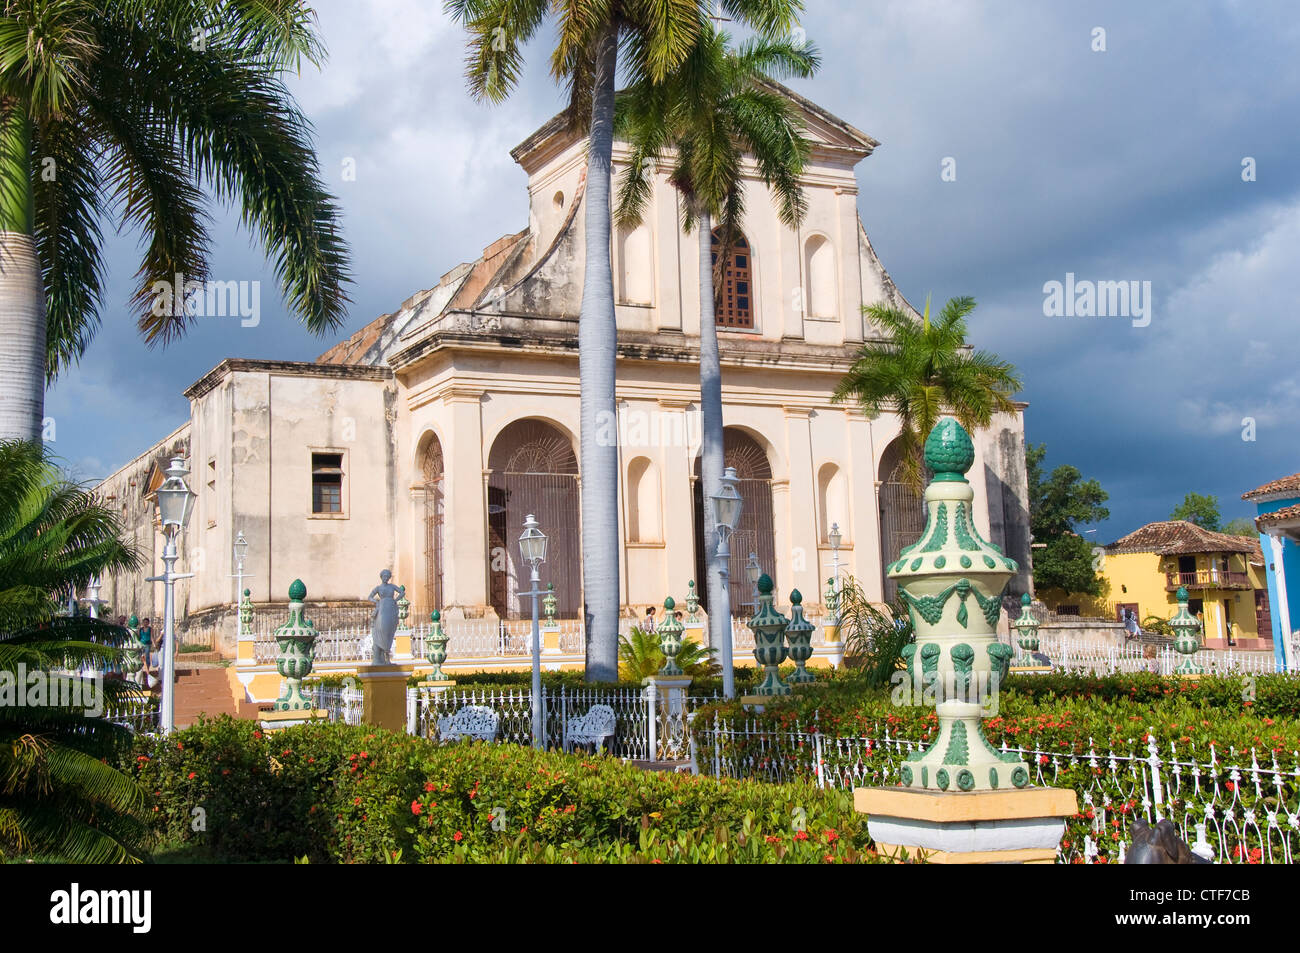 Church of the Holy Trinity, Trinidad, Cuba Stock Photo